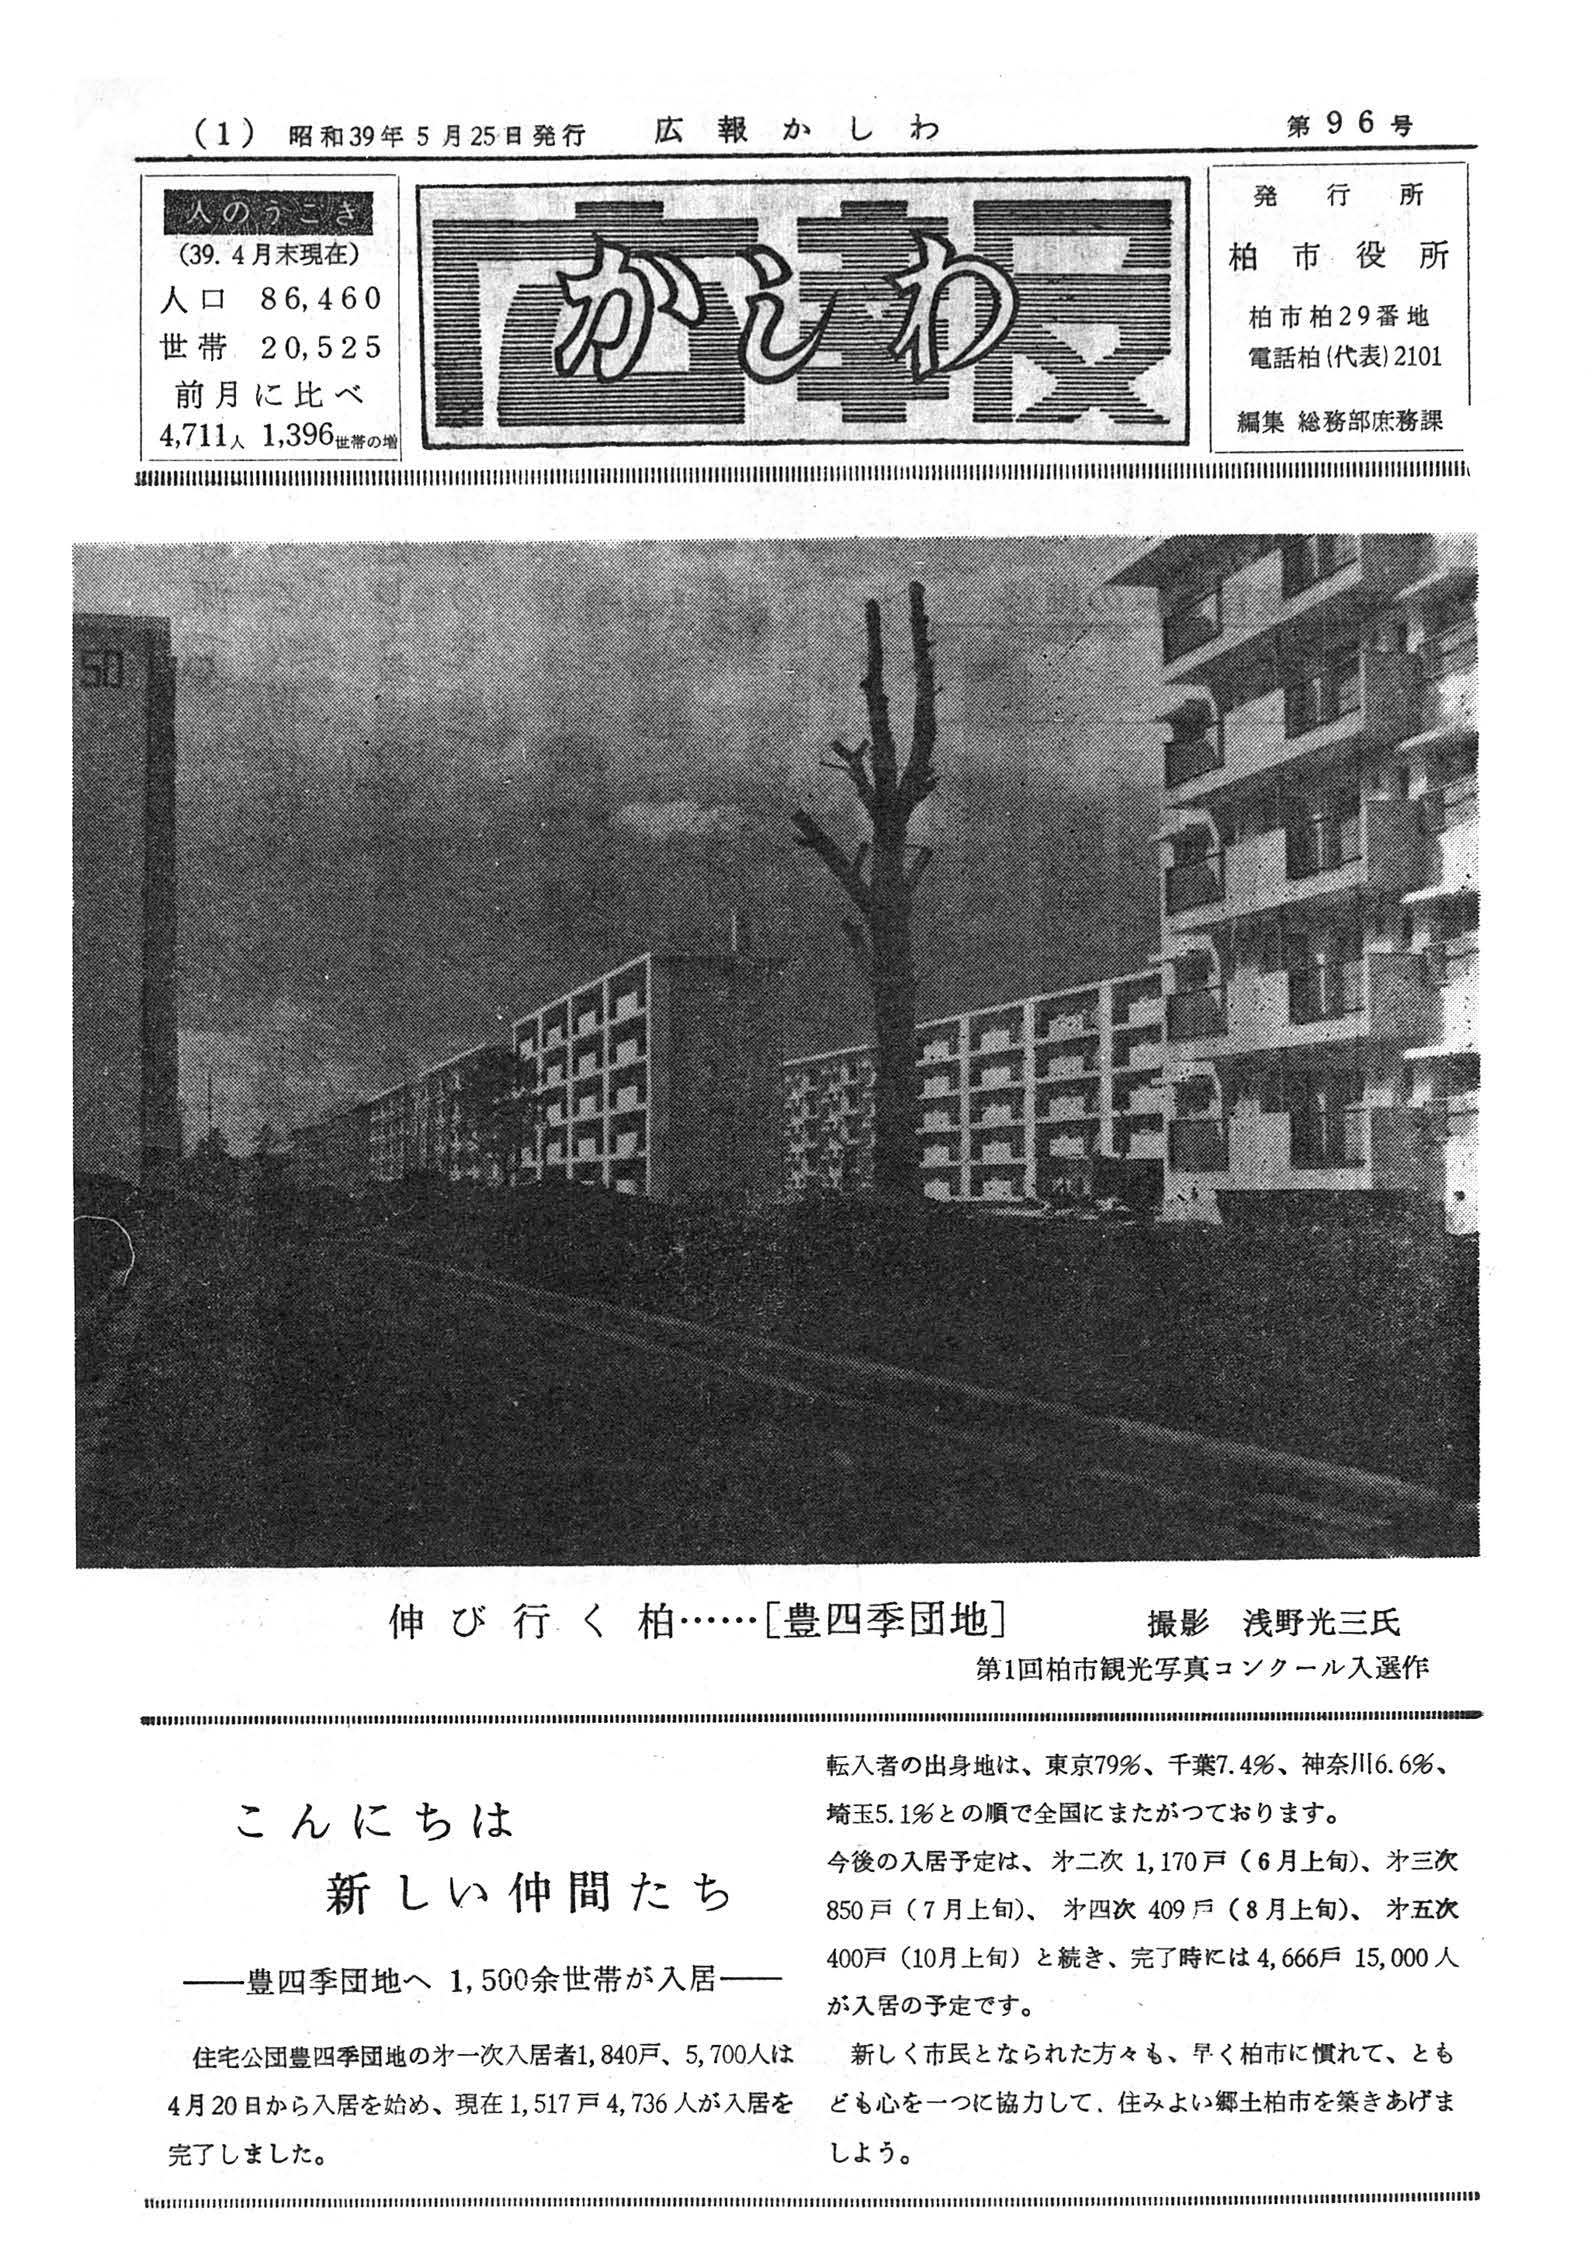 広報かしわ　昭和39年5月25日発行　96号